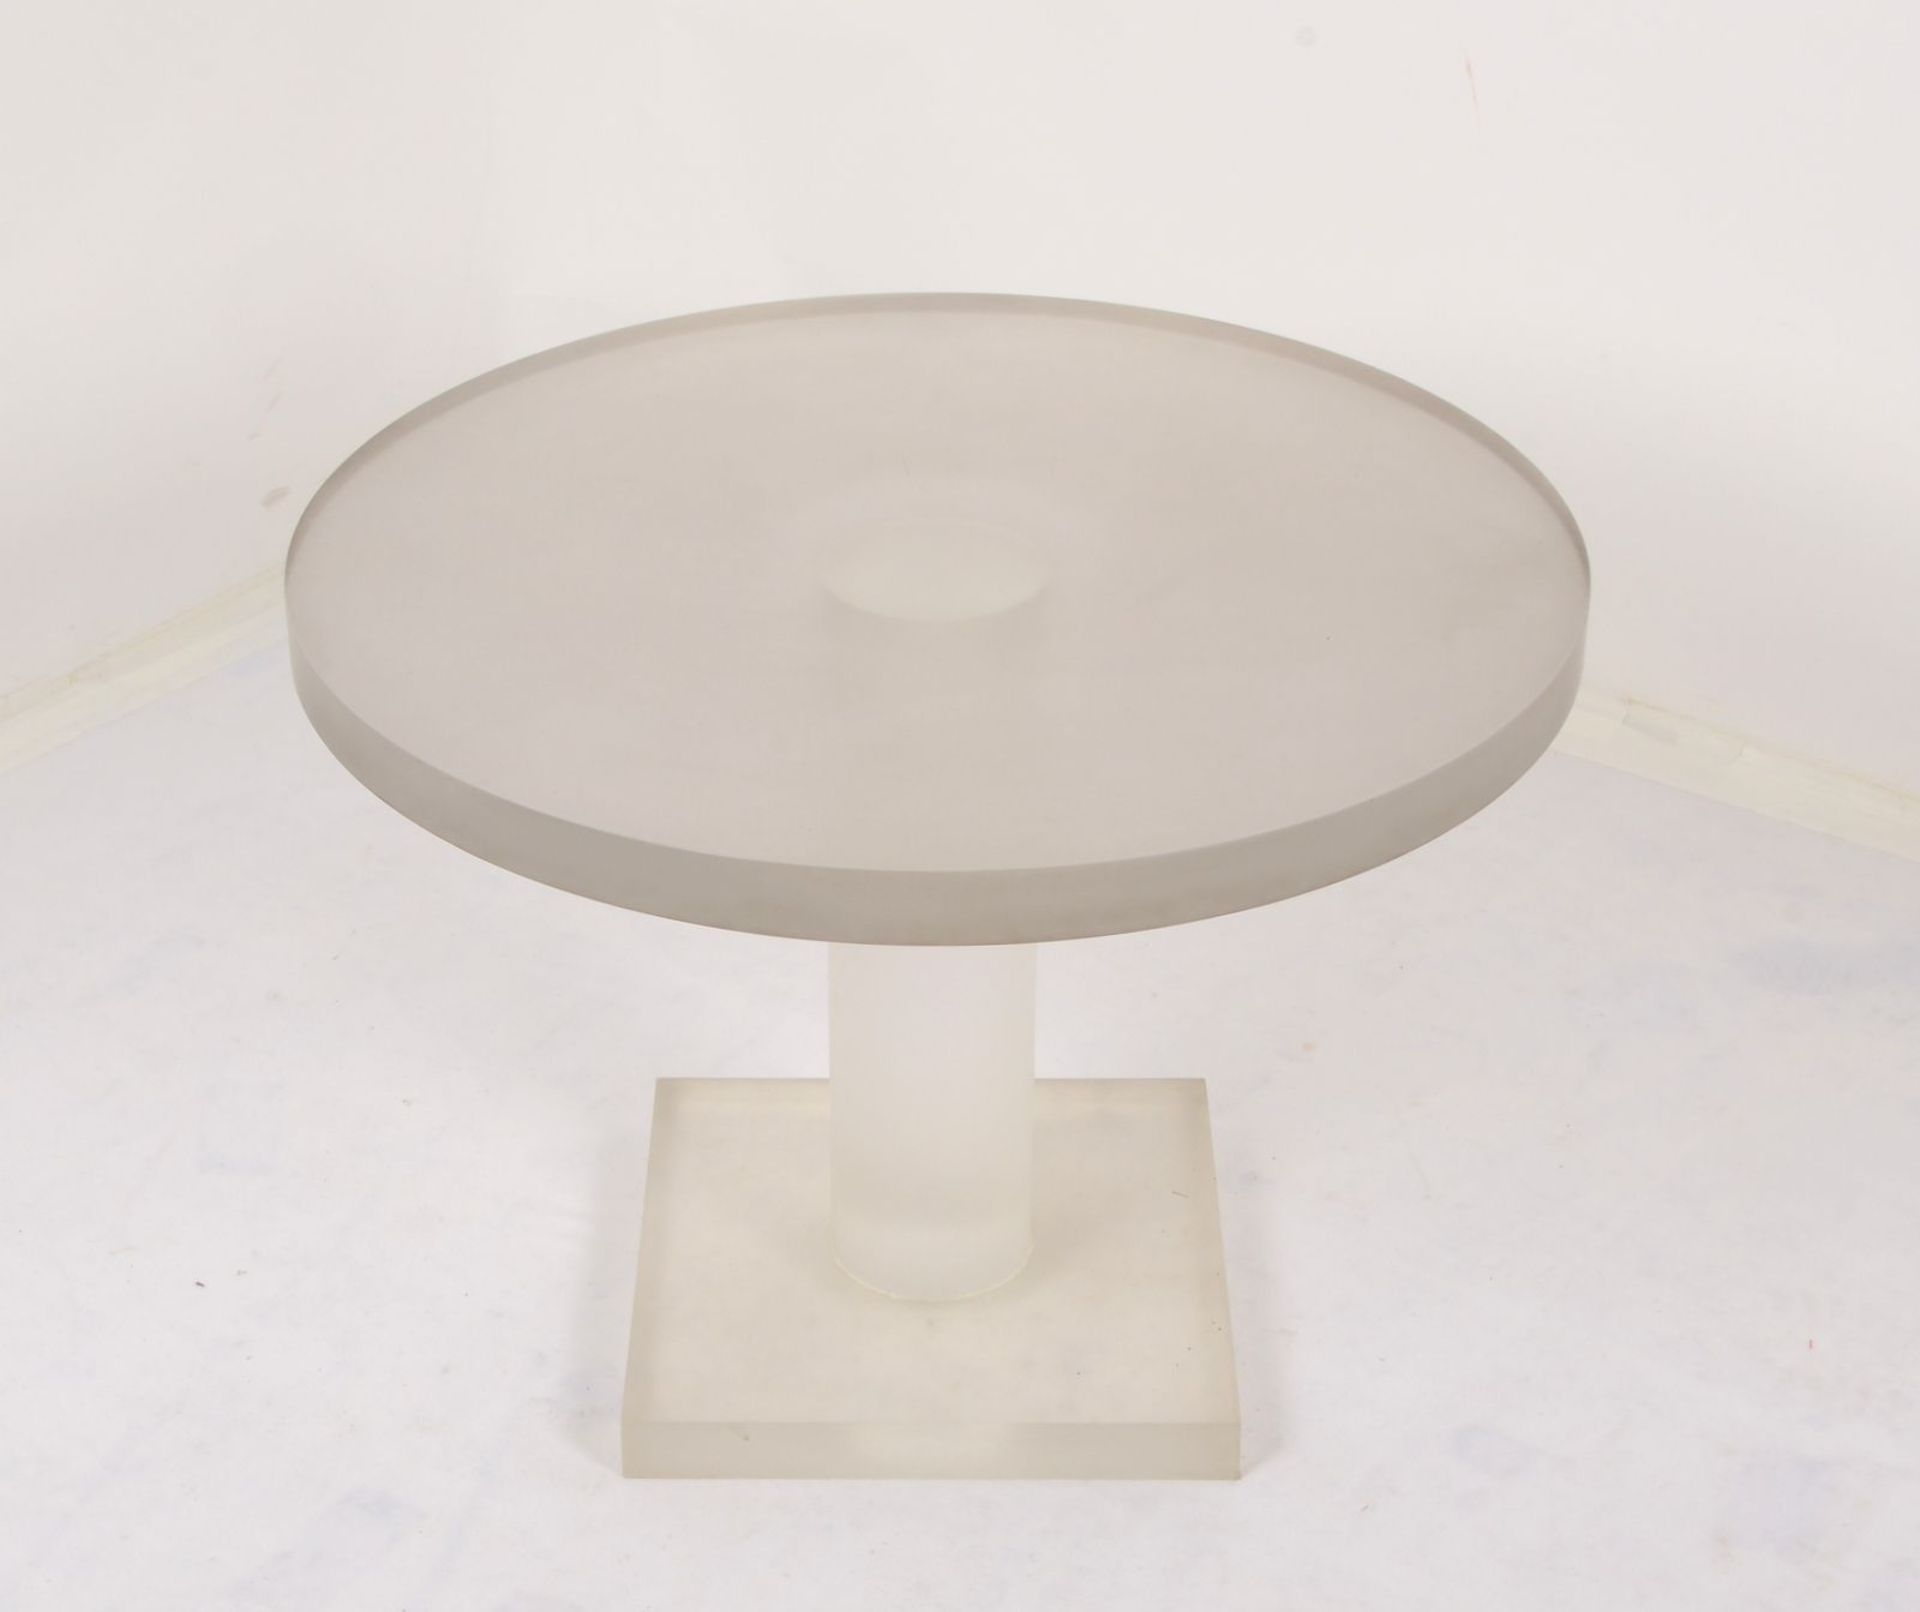 Couchtisch, Plexiglas/mattiert, runde starke Platte/4 cm, auf quadratischem Fu&szlig;; H&ouml;he 50,